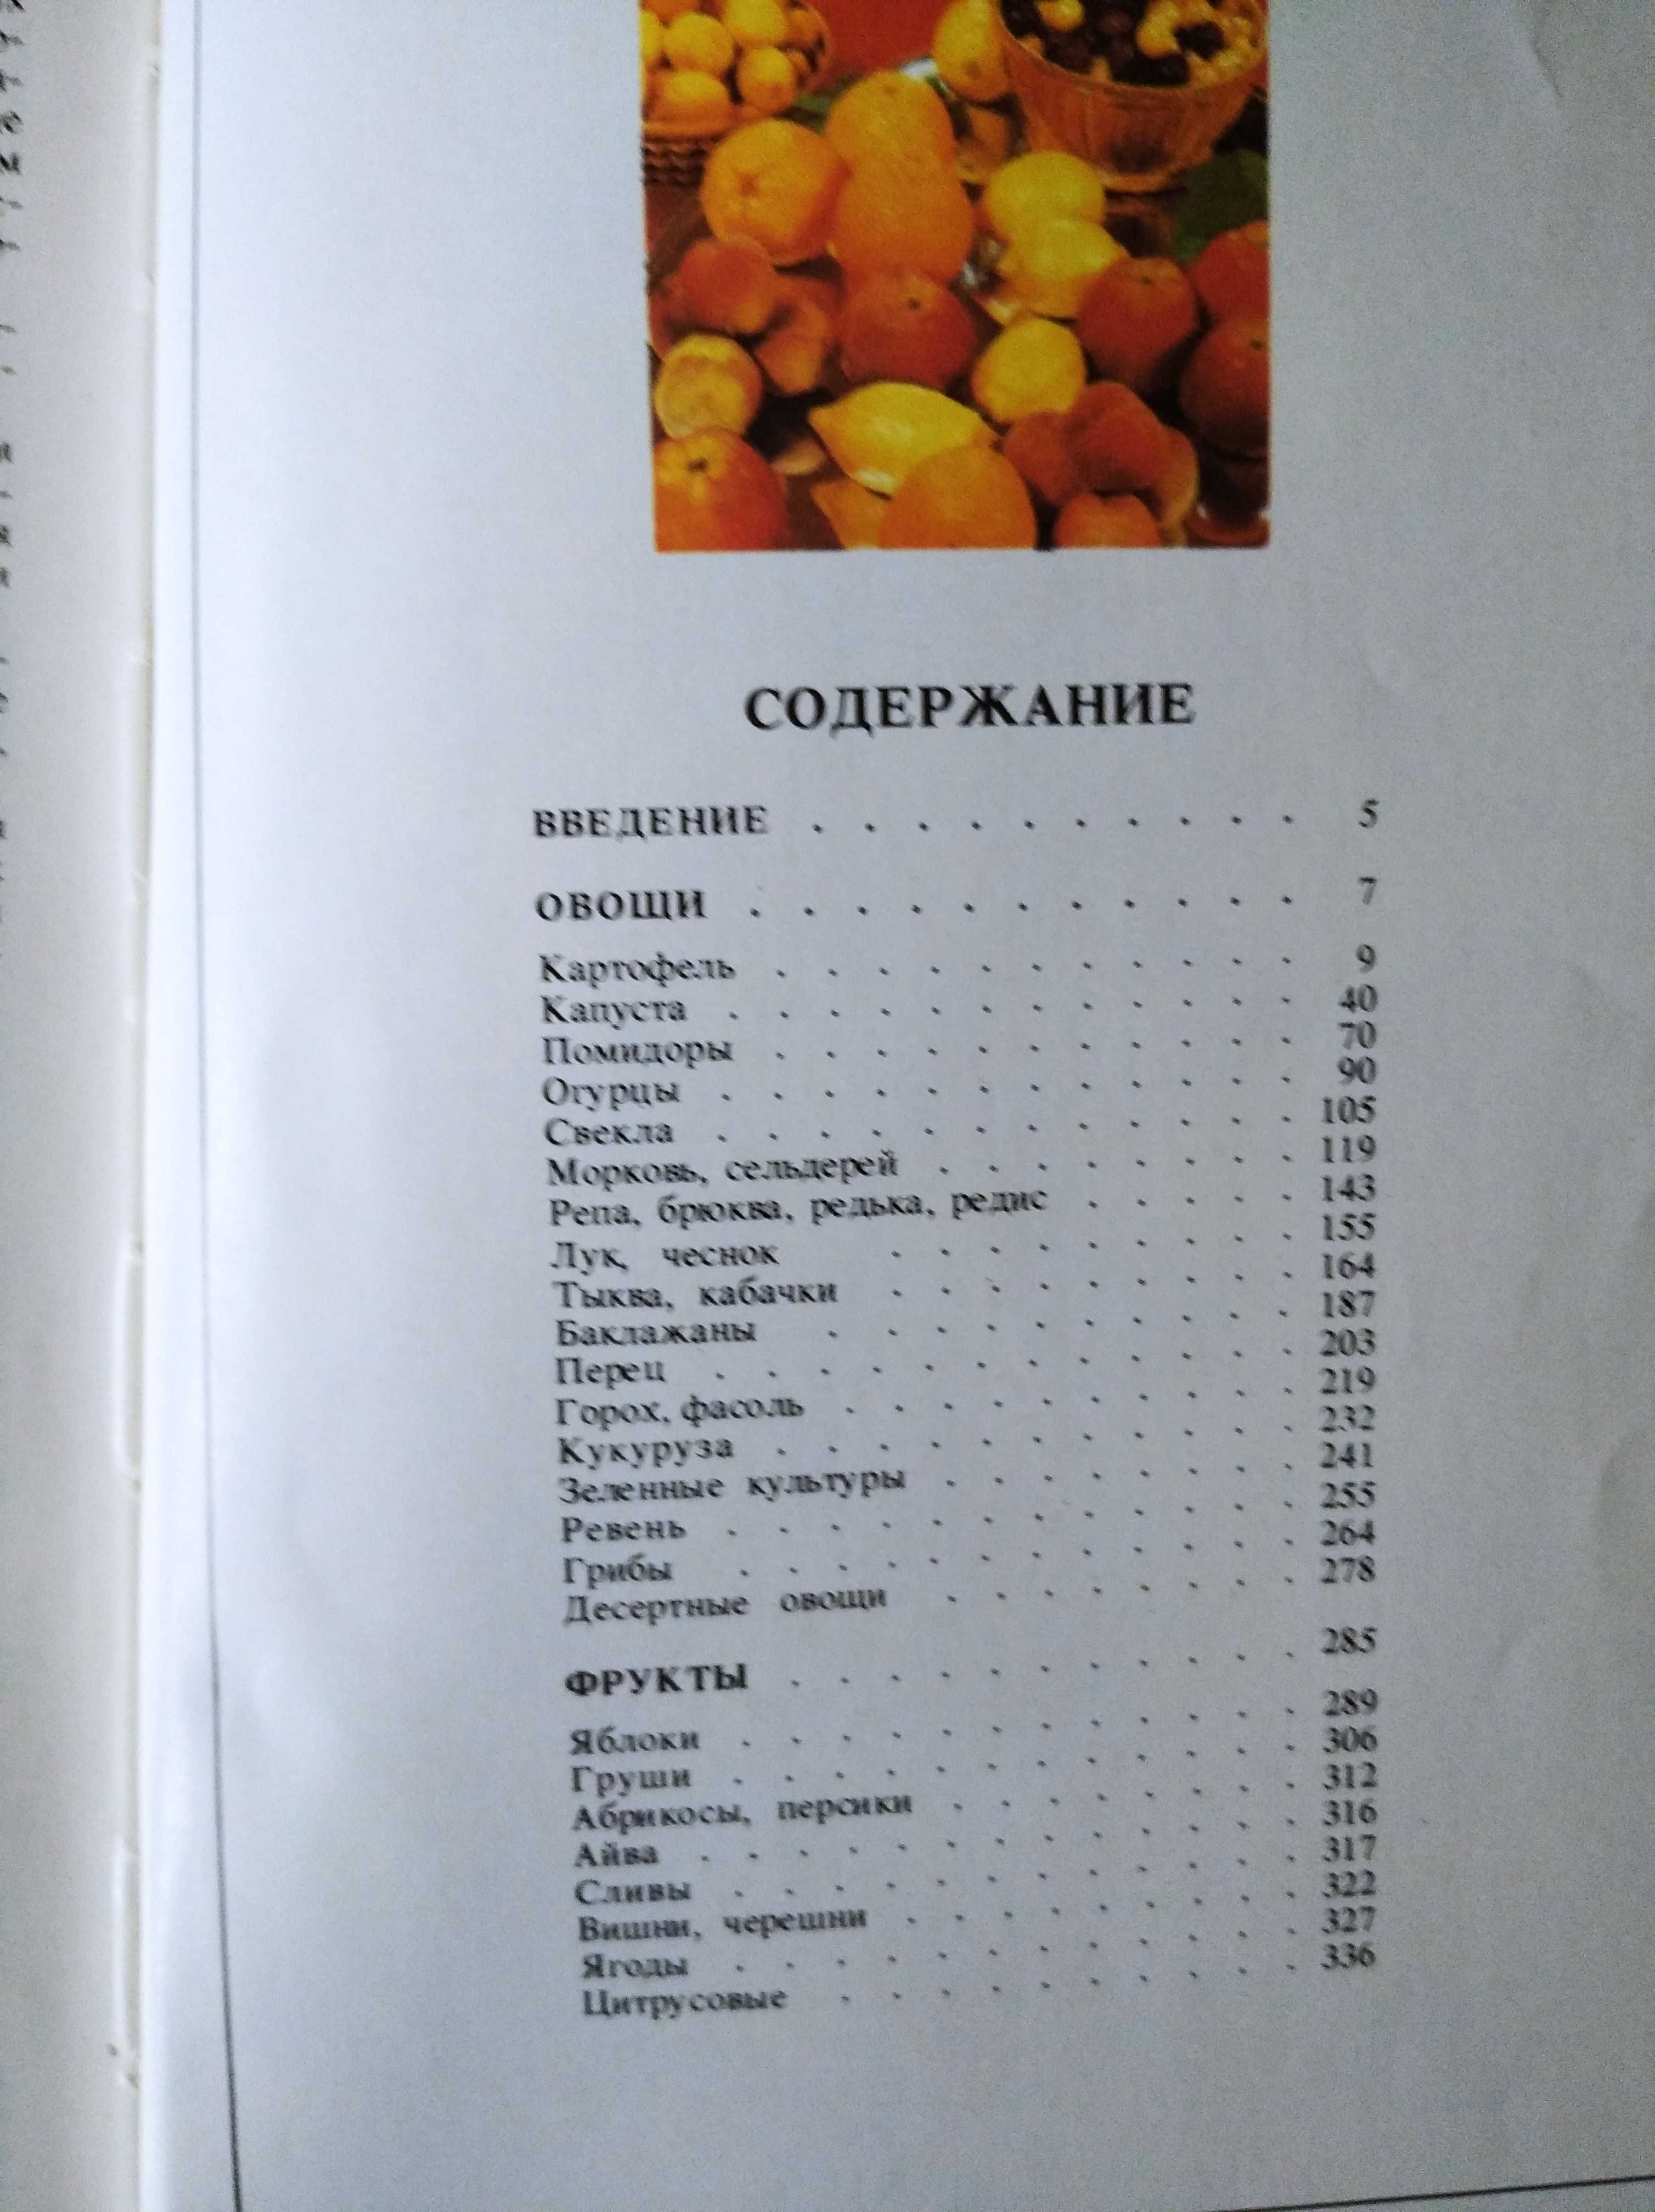 Книга Овощи и фрукты на вашем столе